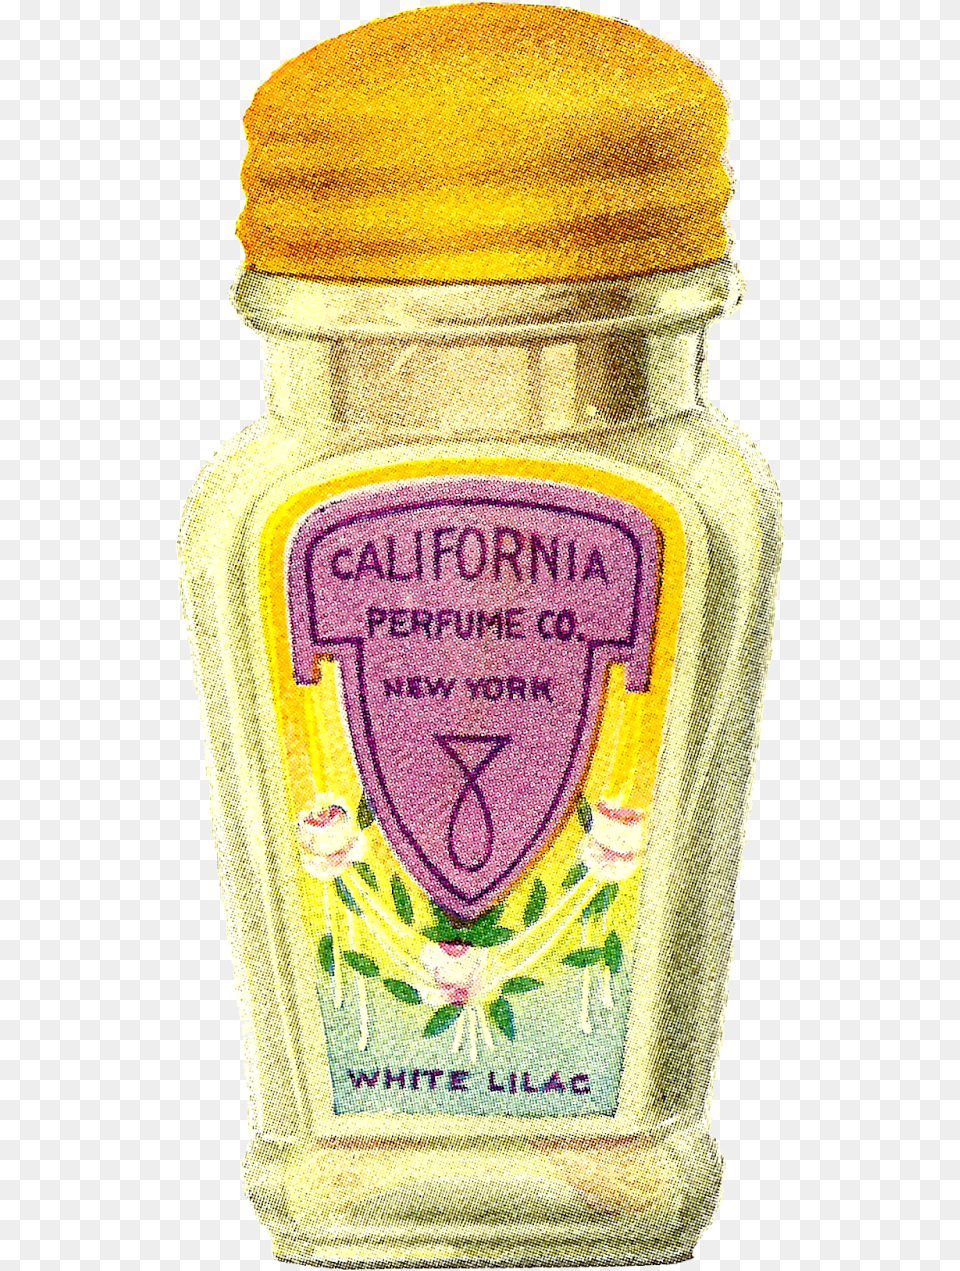 Perfume Bottle Clip Art Vintage Bottle, Food, Mustard, Jar, Person Png Image